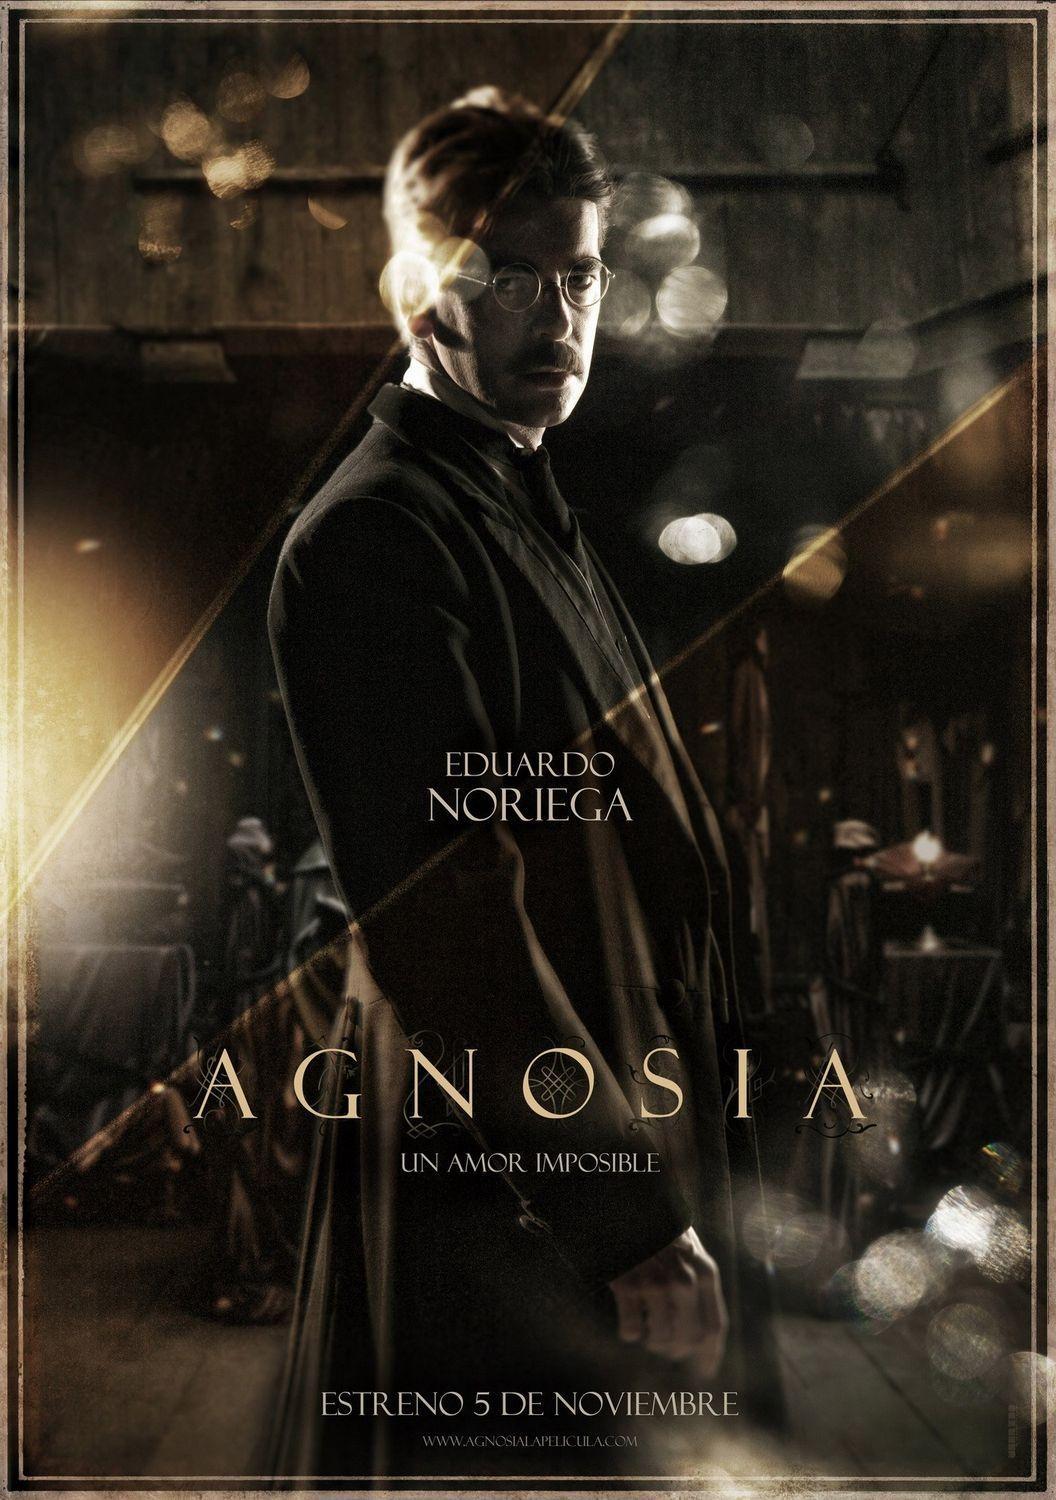 Постер фильма Агнозия | Agnosia